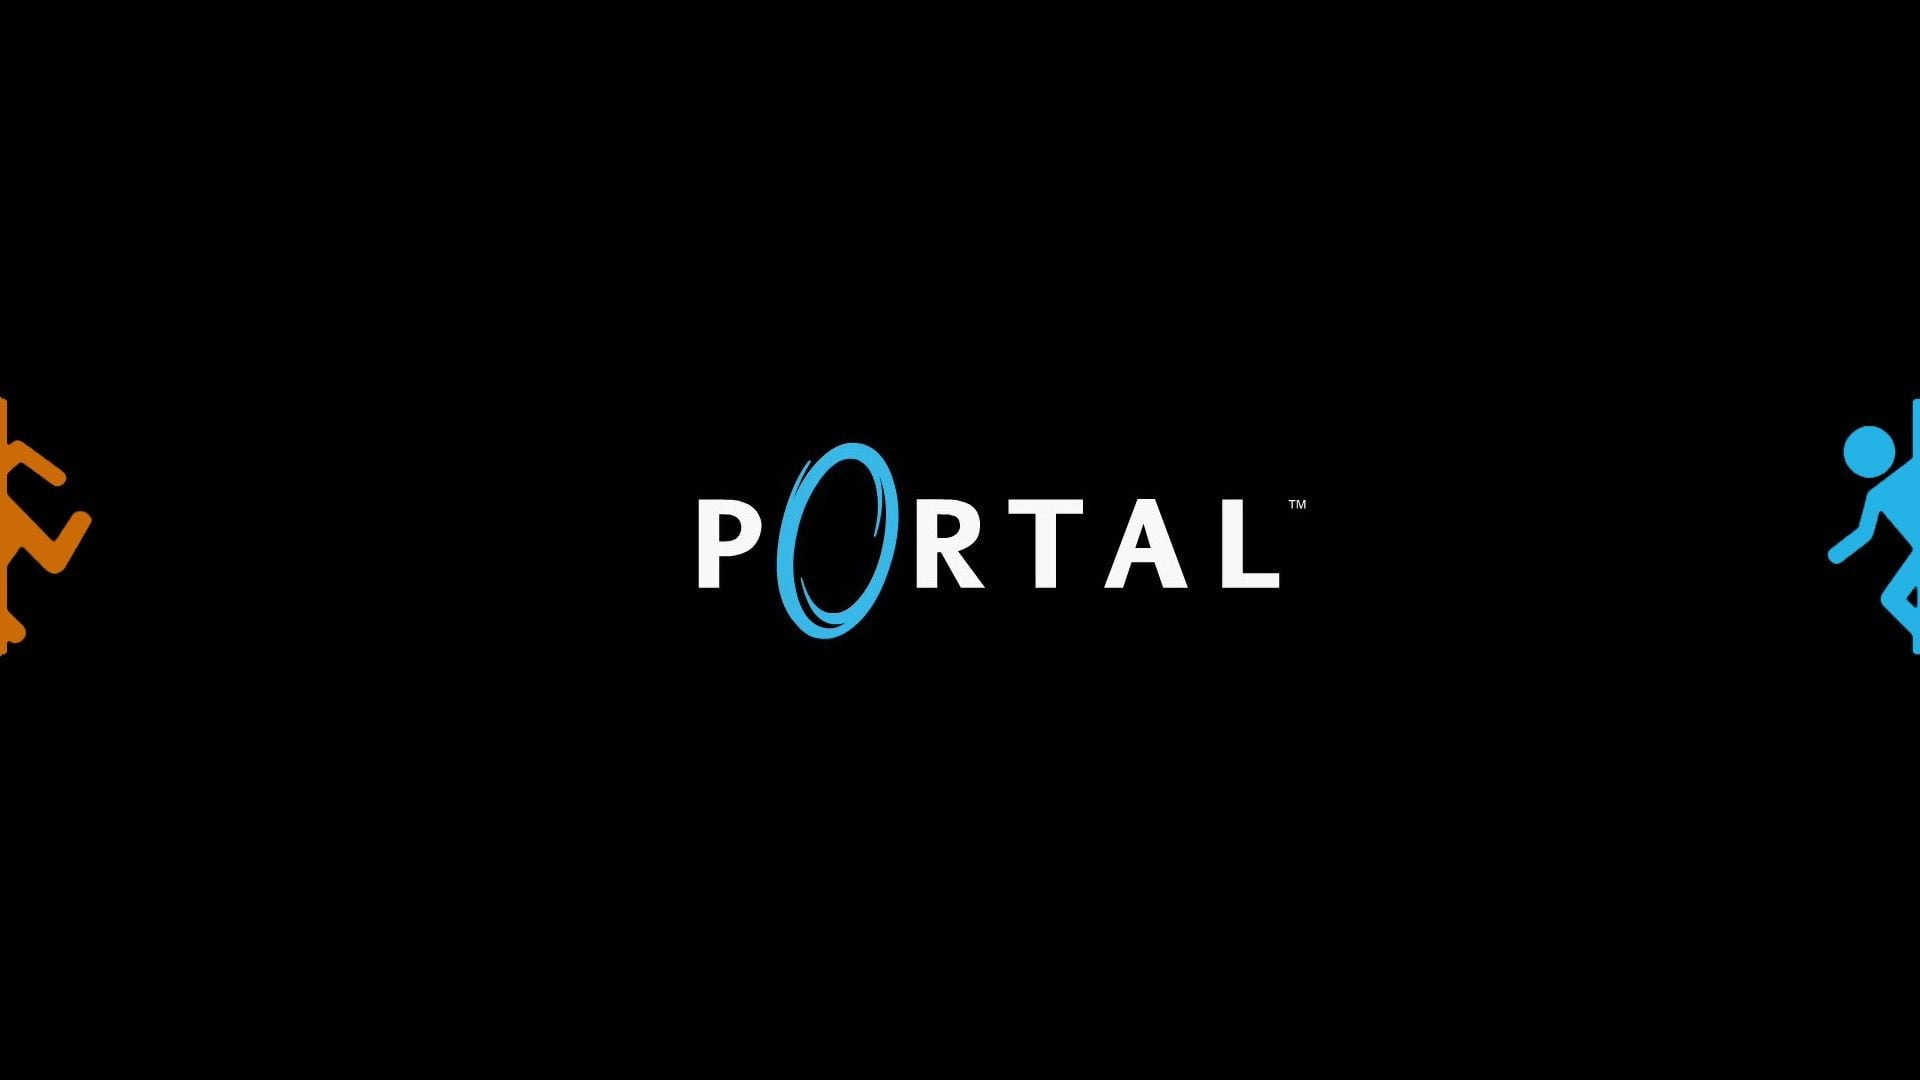 Portal 2 theme want you gone фото 57